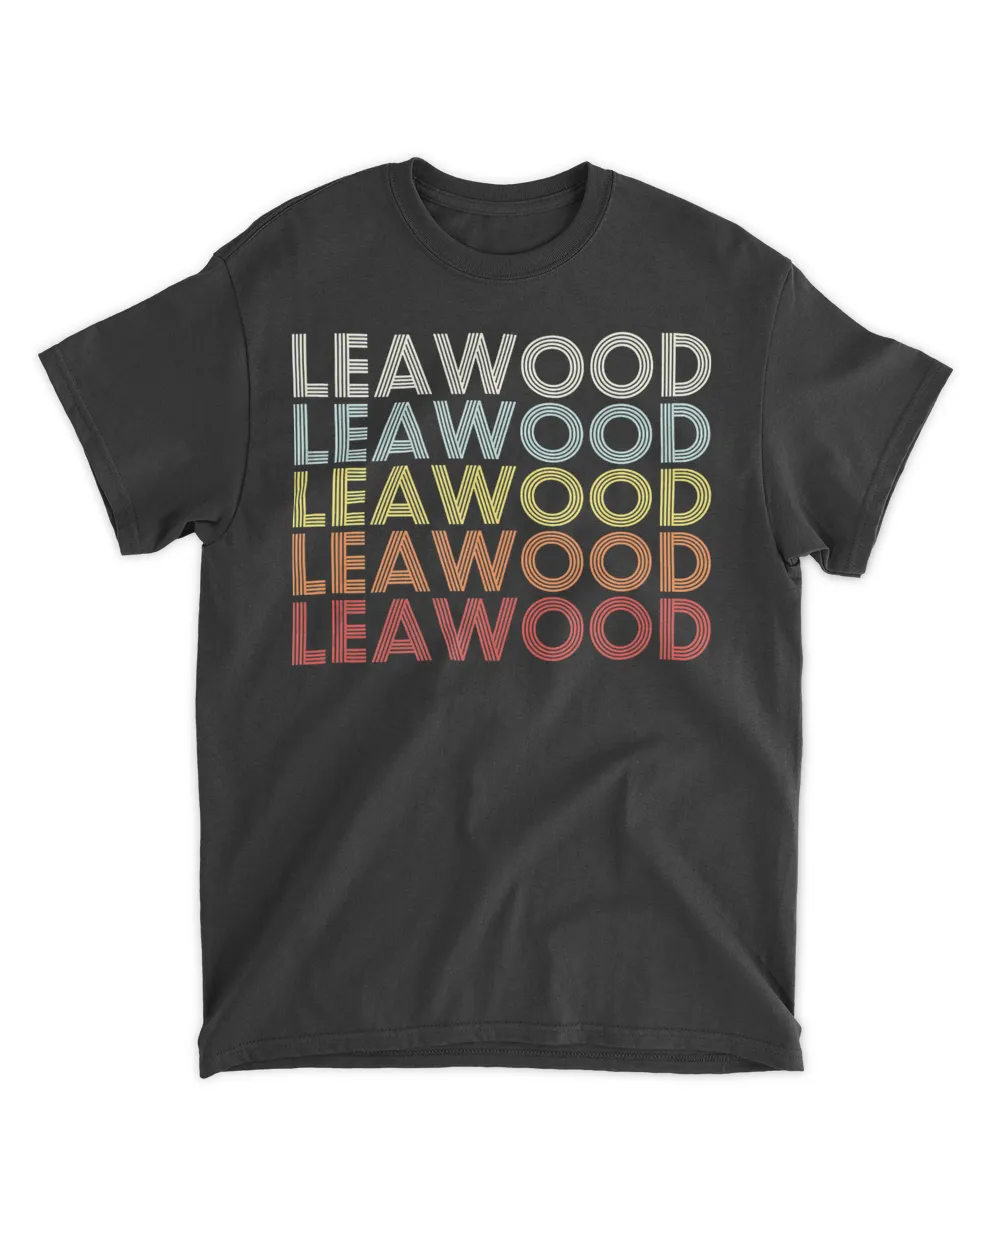 Leawood Kansas Leawood KS Retro Vintage Text 24AM139